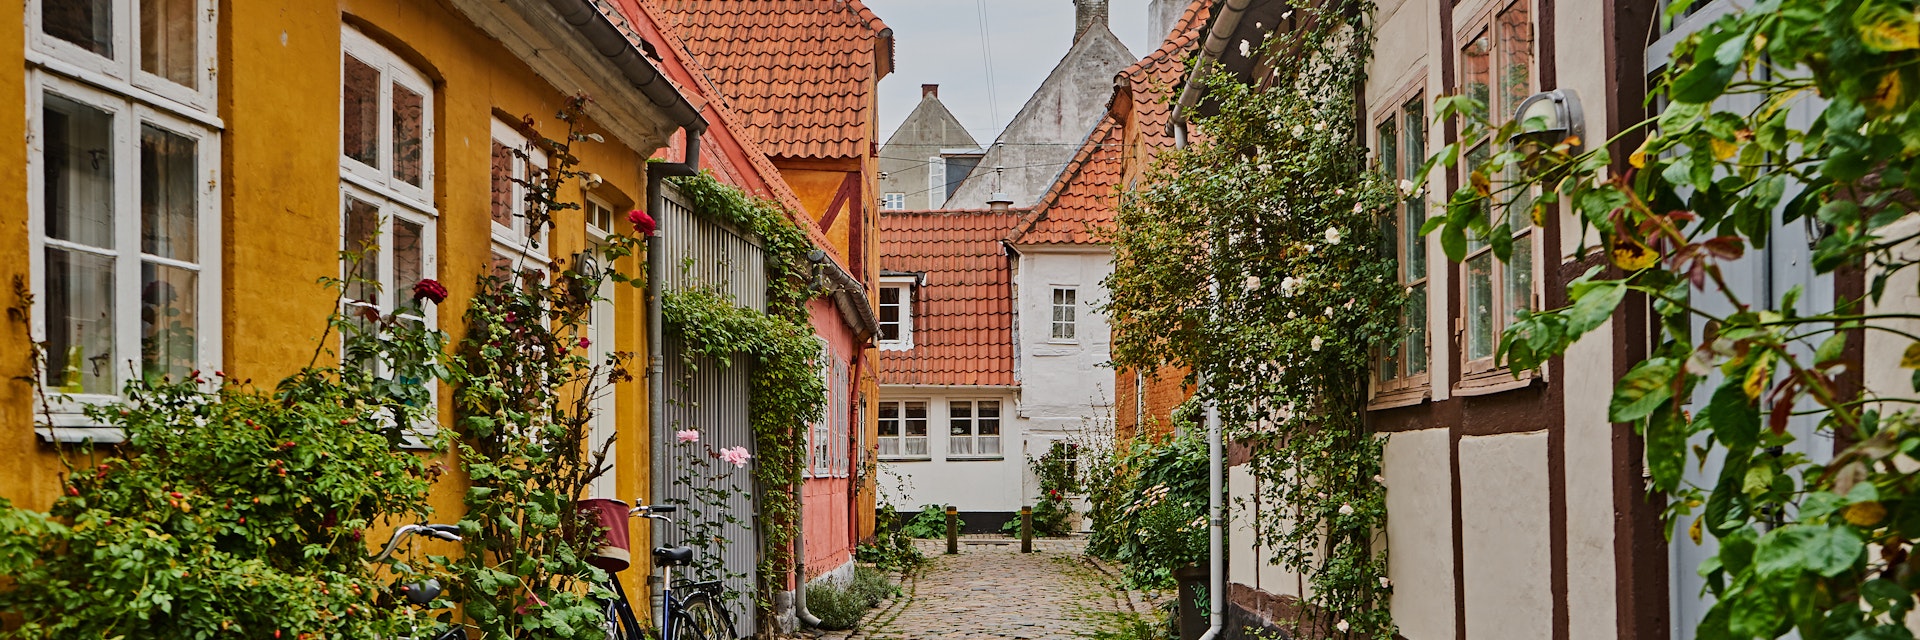 Cobblestone streets from Helsingor in Denmark.